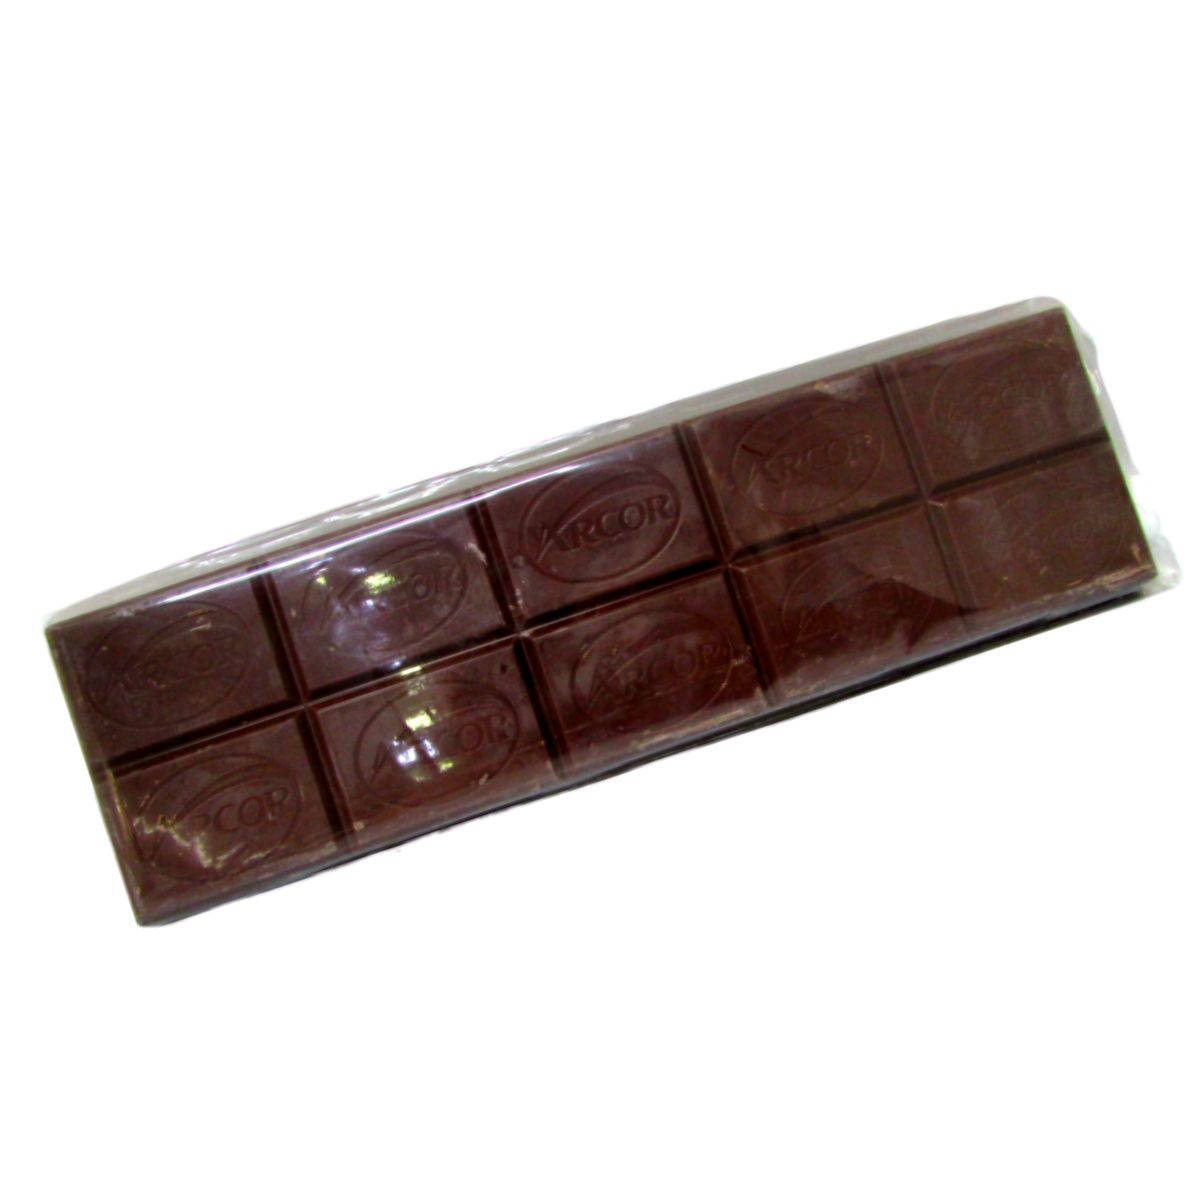 Chocolate Meio Amargo Arcor 500g Embalado